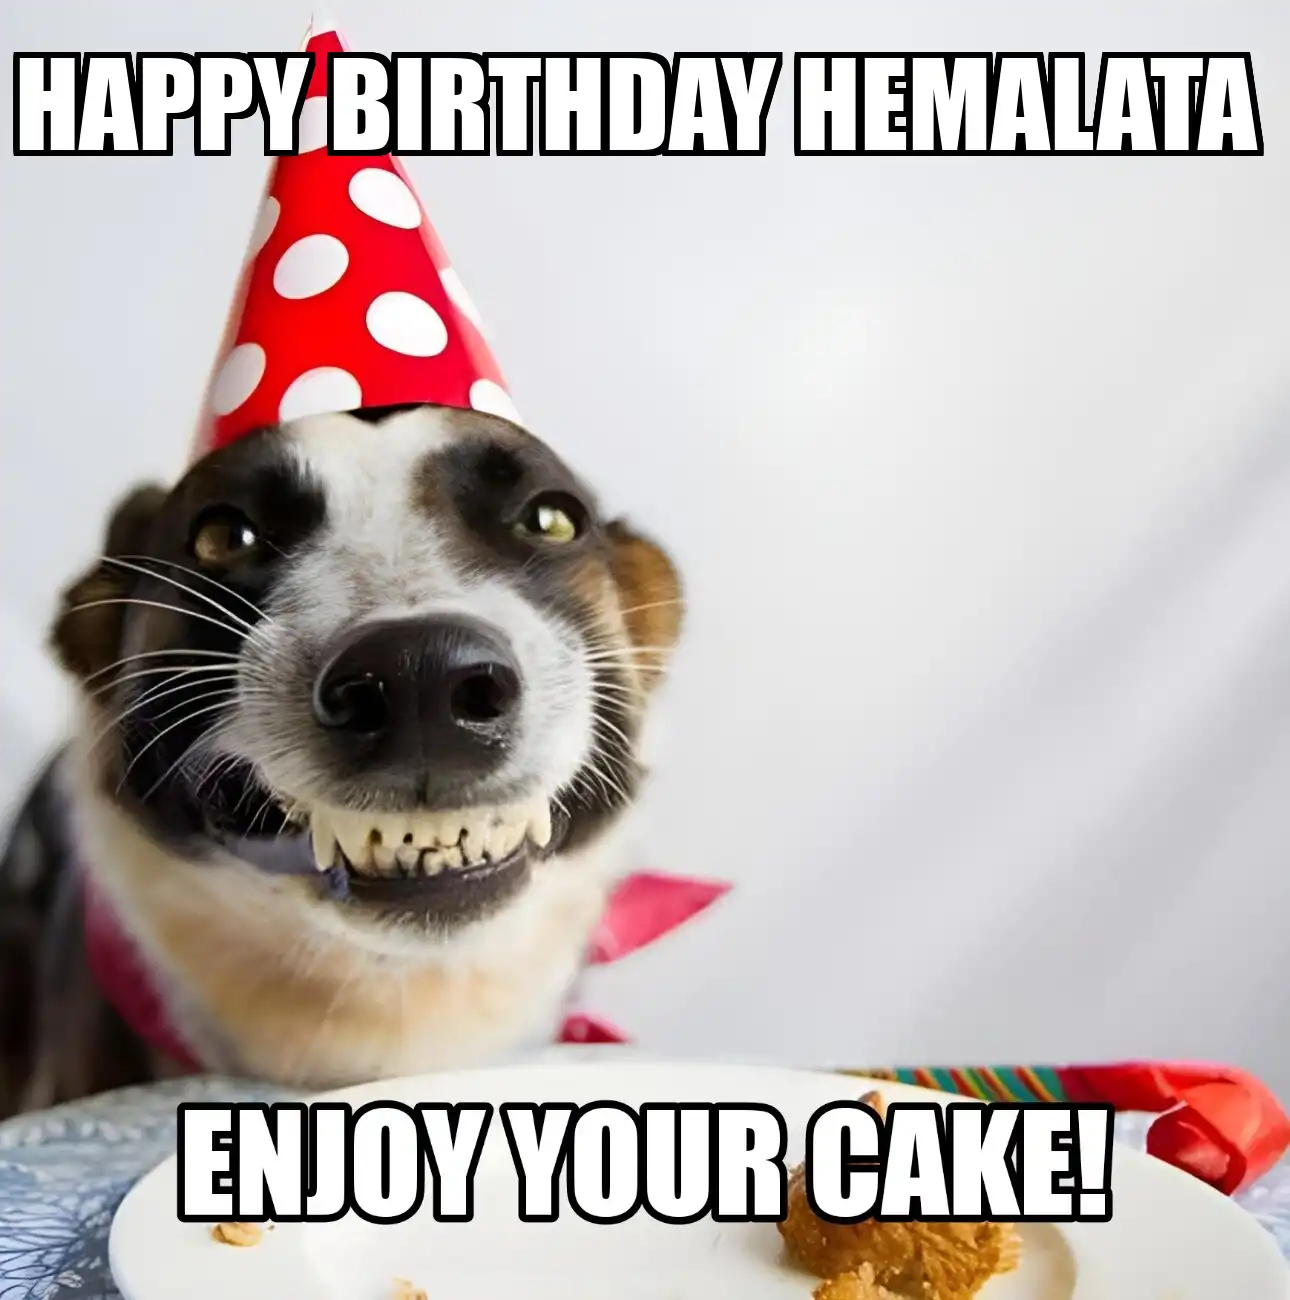 Happy Birthday Hemalata Enjoy Your Cake Dog Meme